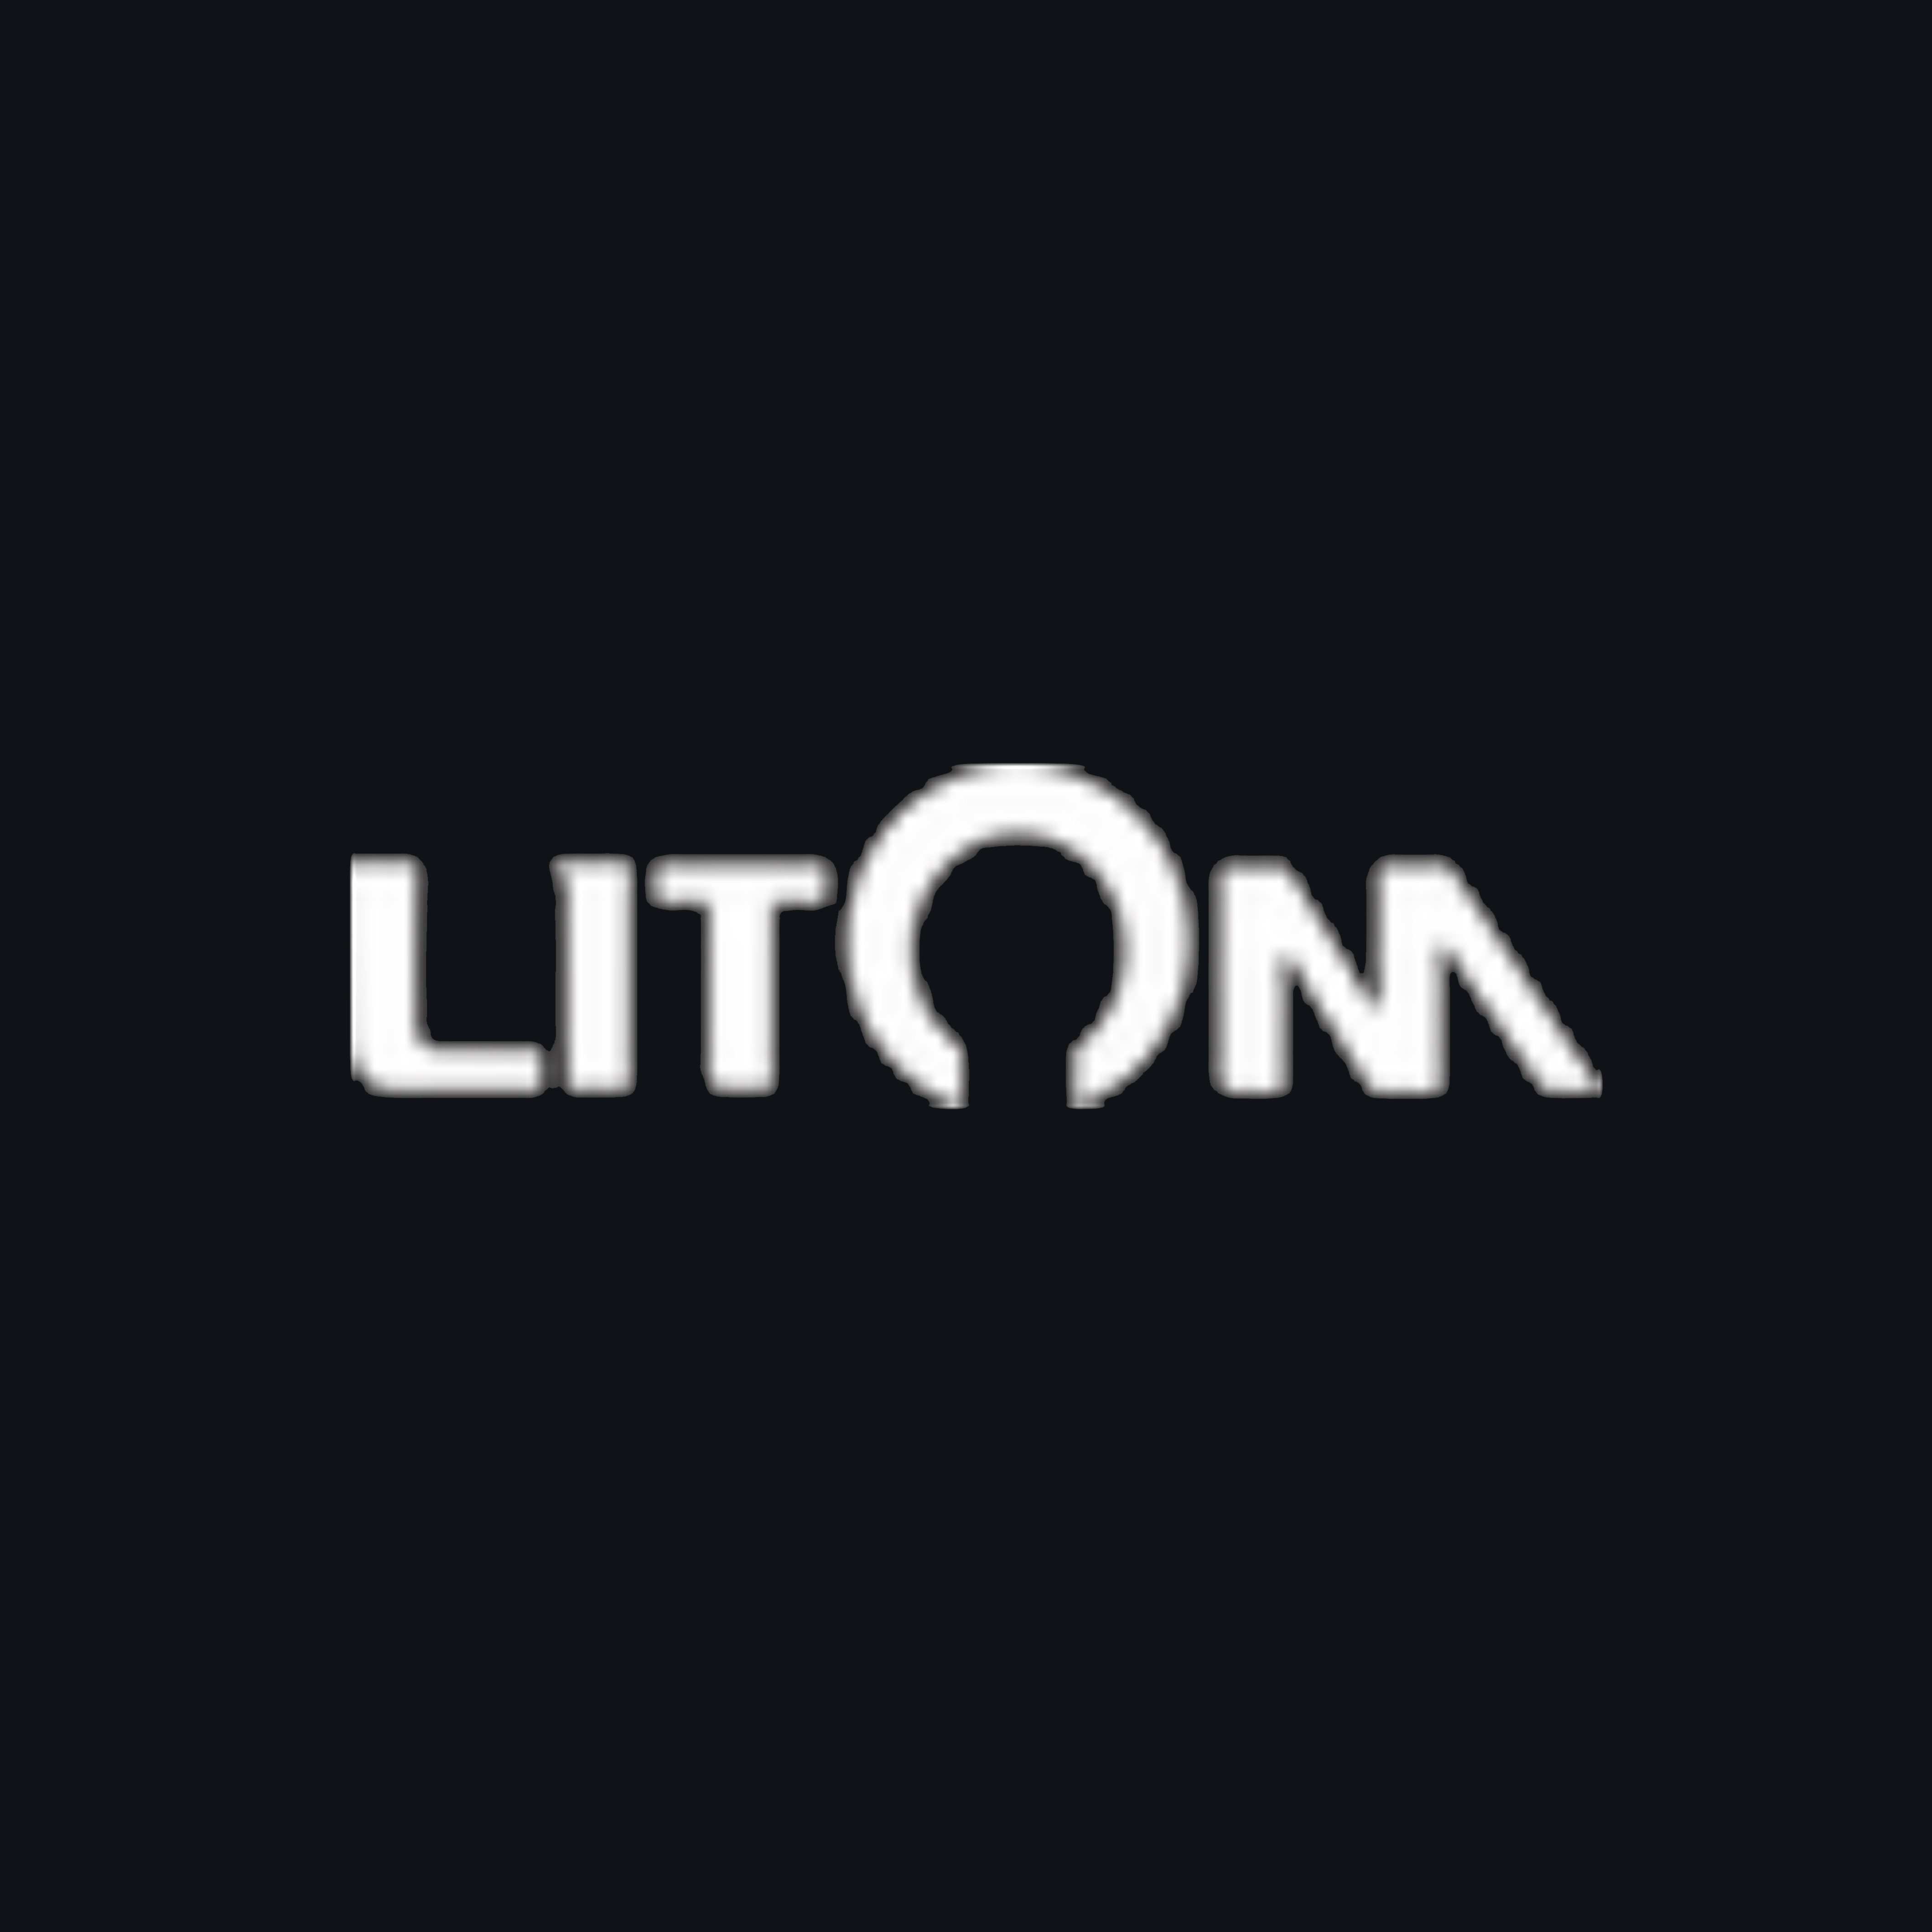 Litom logo